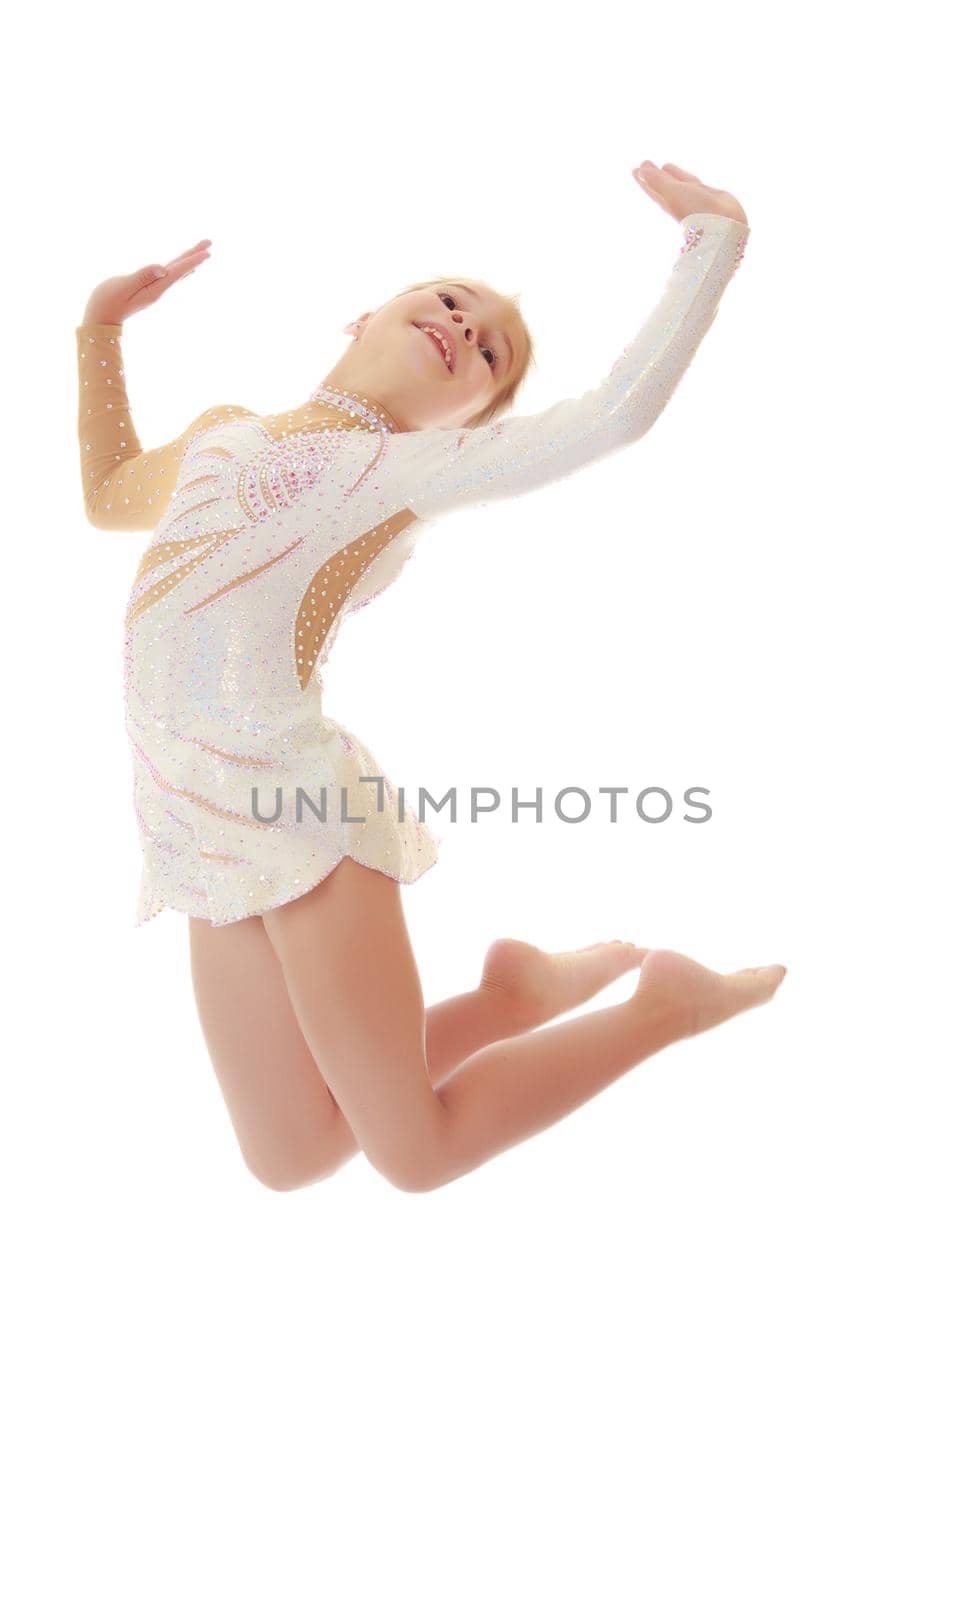 Little gymnast jumping by kolesnikov_studio